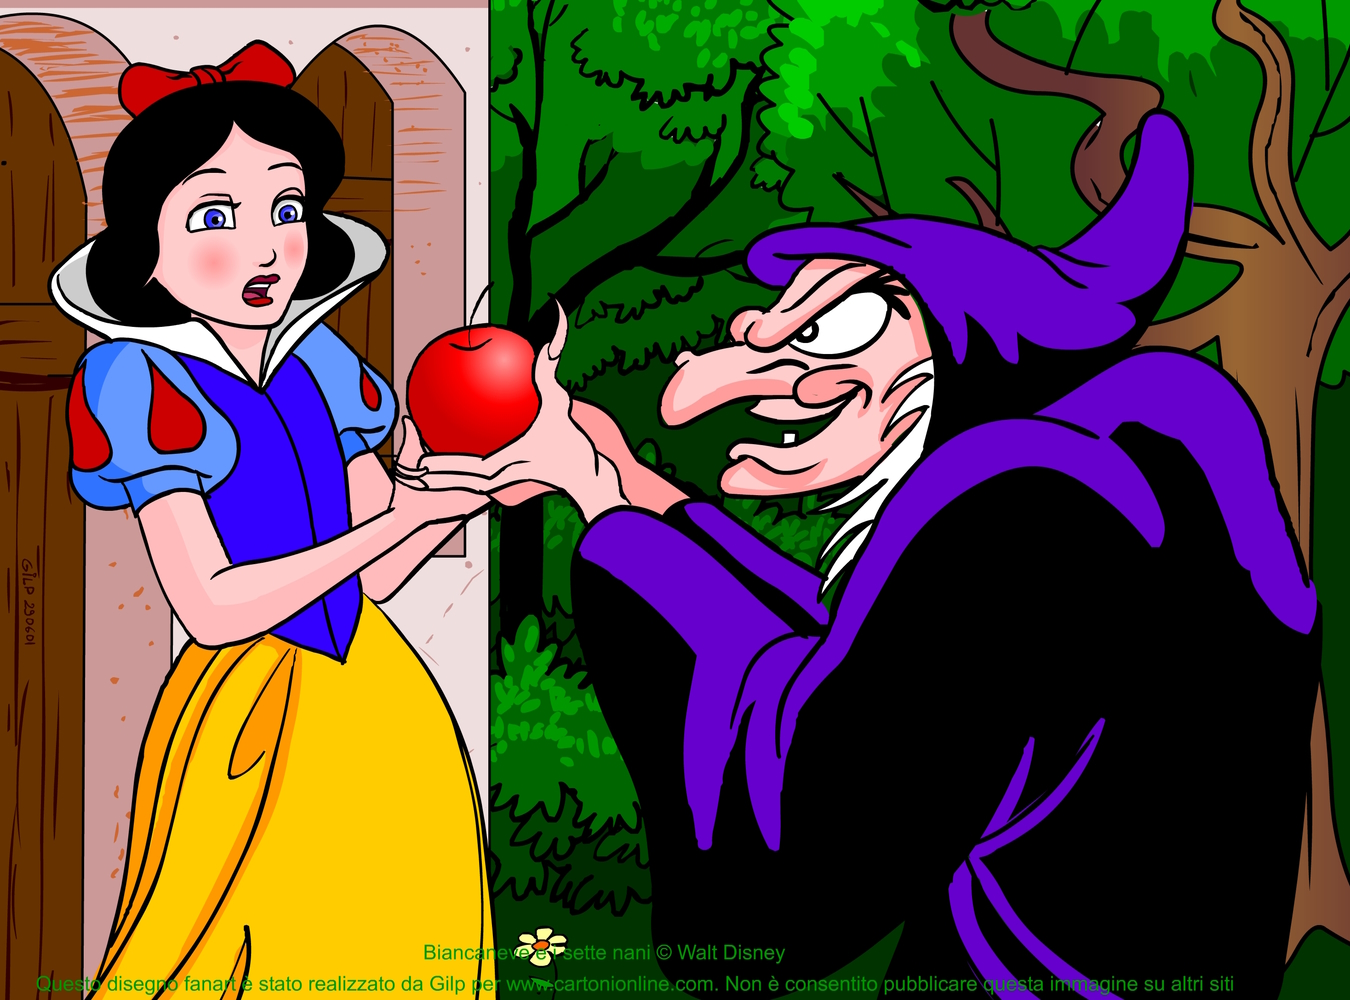 Immagine di Biancaneve e la strega cattiva che le consegna la mela avvelenata